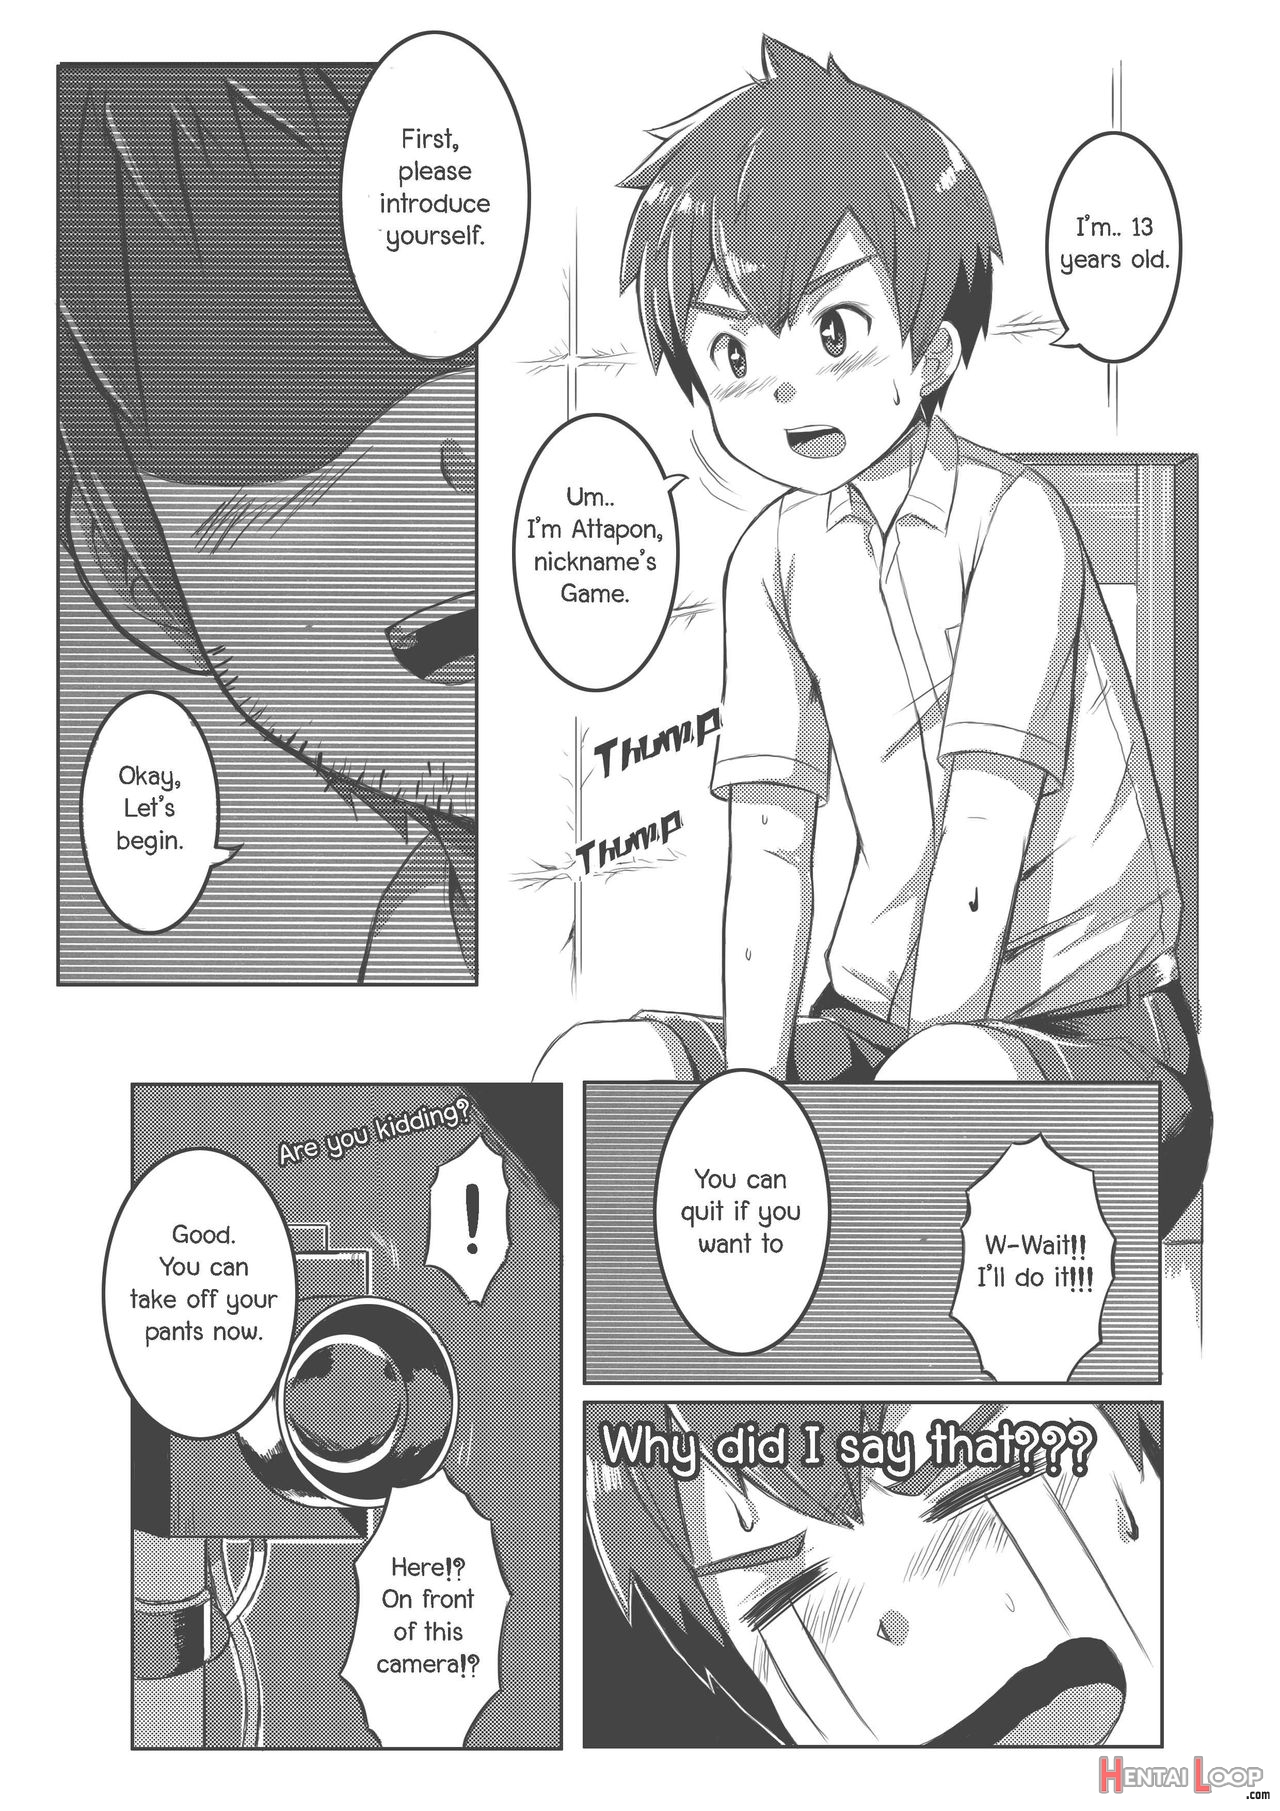 Shota Fantasy V page 10